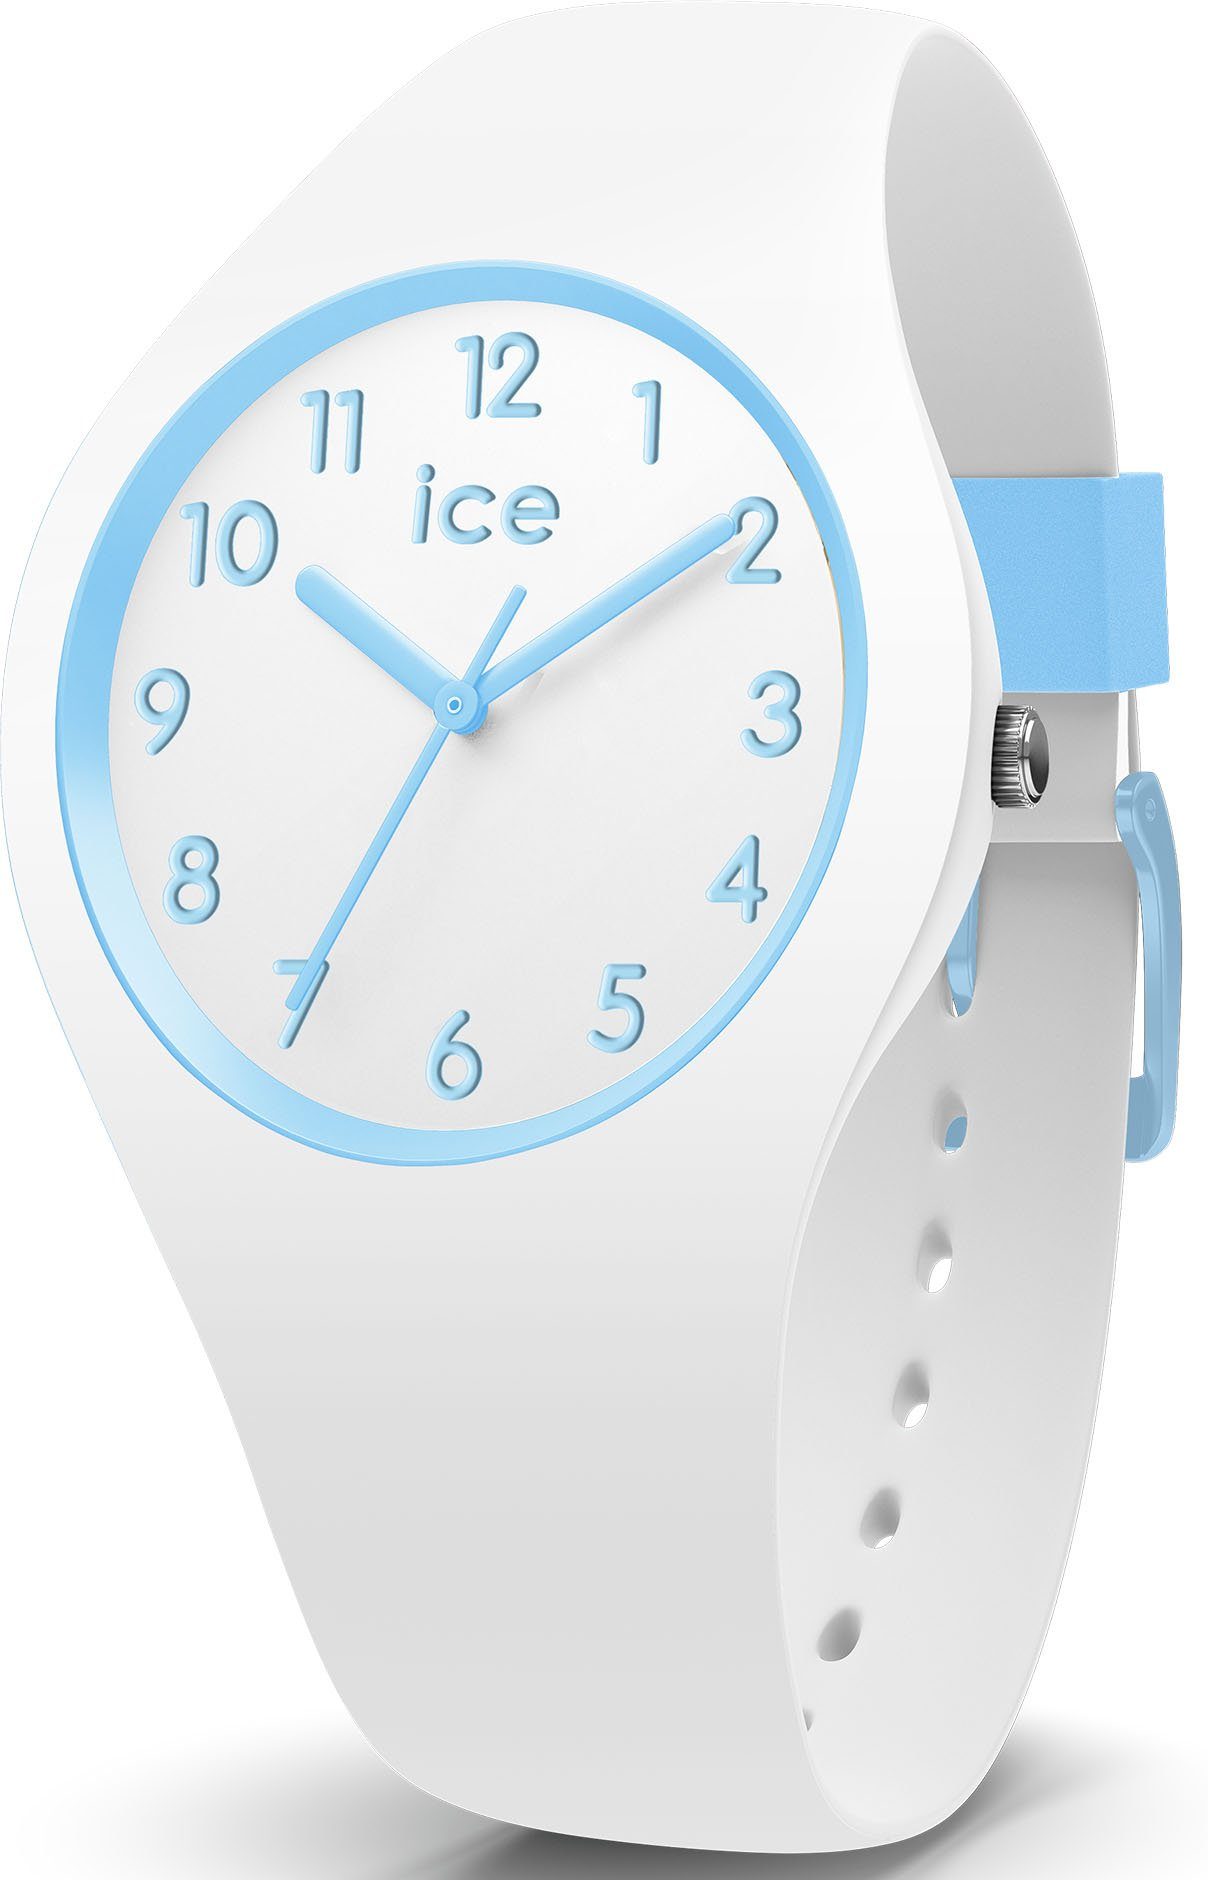 ice-watch Quarzuhr ICE ola kids, 014425, ideal auch als Geschenk | Quarzuhren